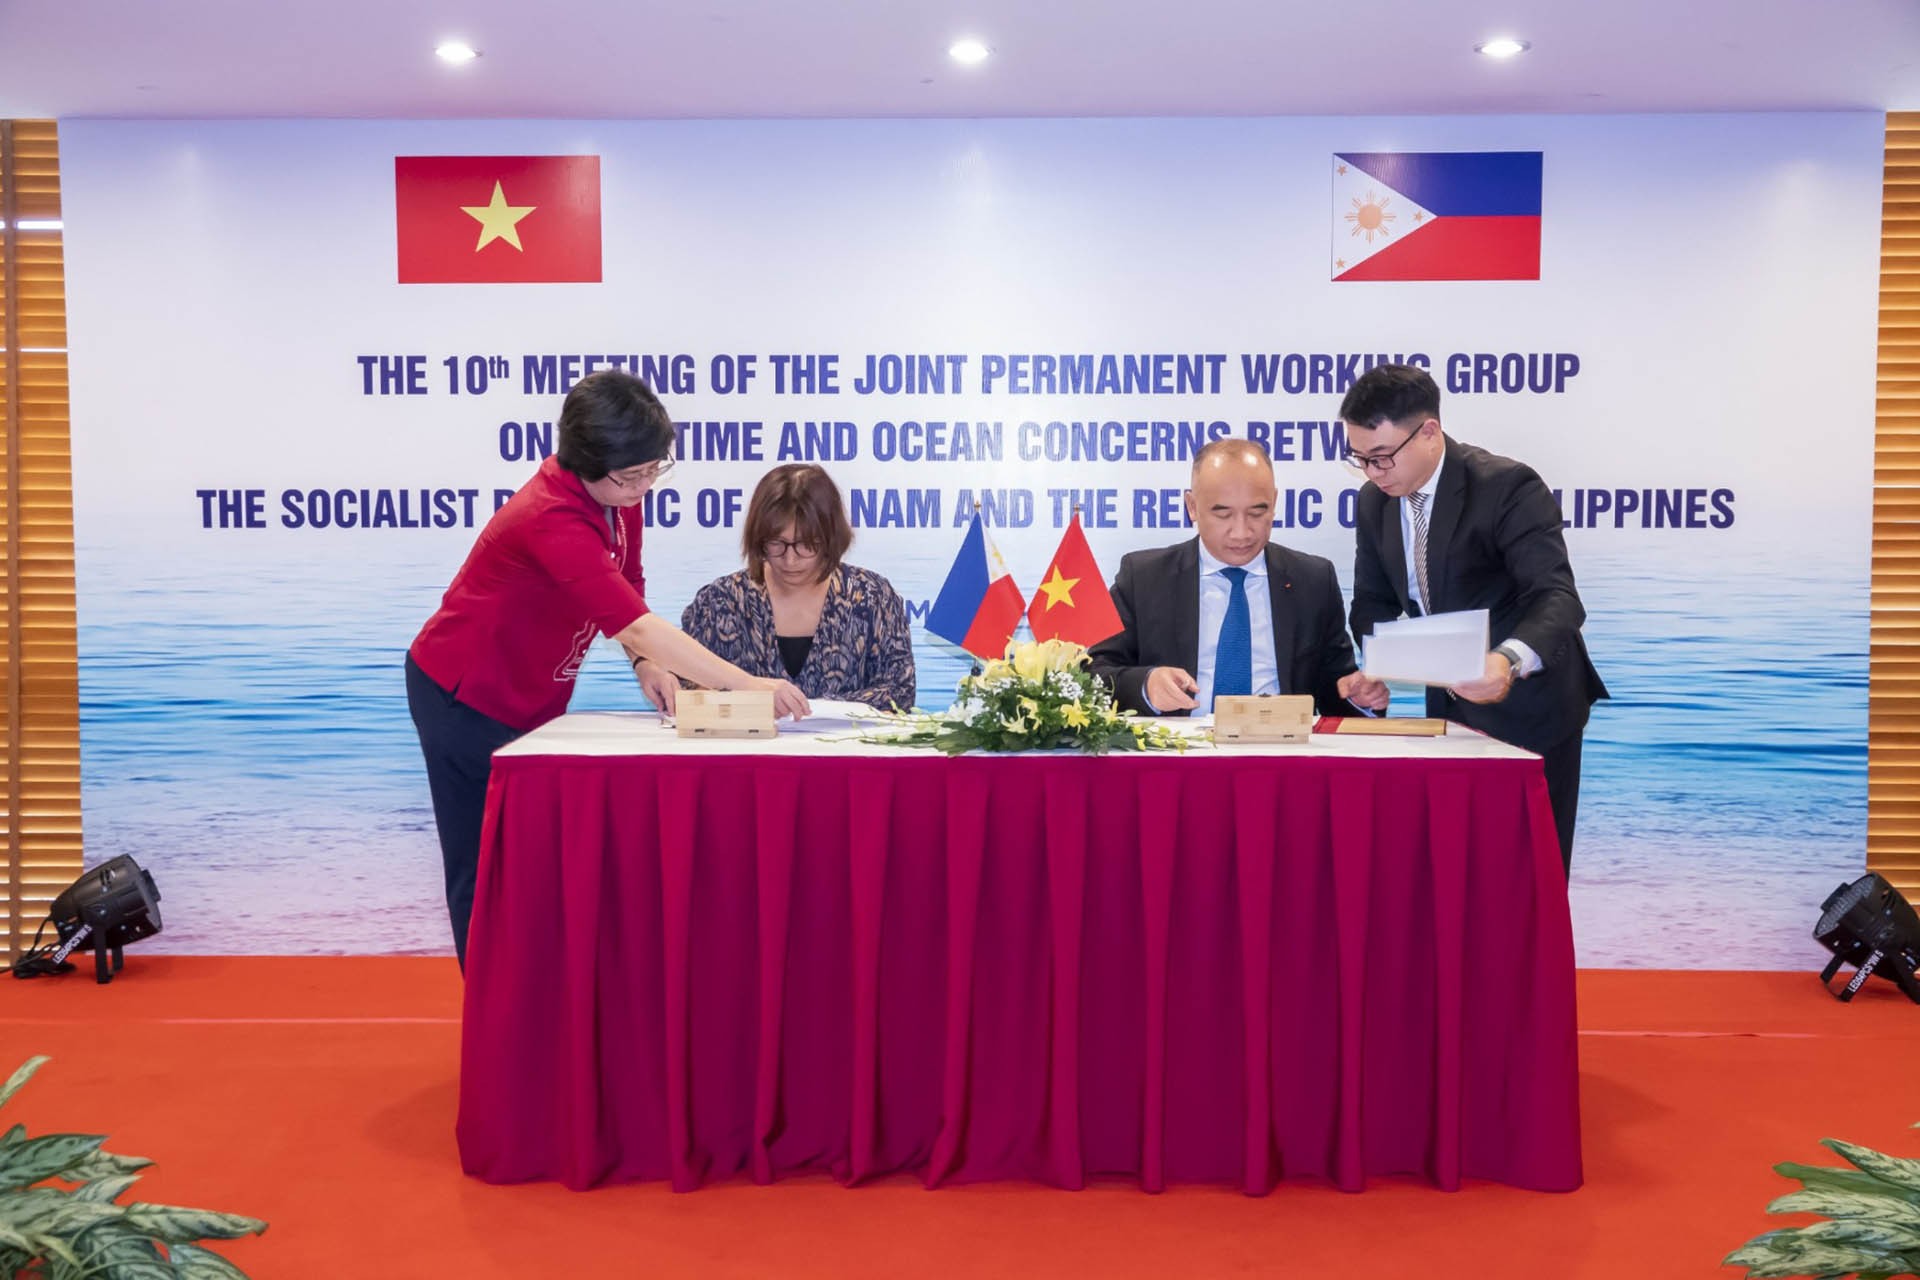 Cuộc họp Nhóm công tác chung giữa Việt Nam và Philippines về các vấn biển và đại dương lần thứ 10 diễn ra trong ngày 15-16/5, tại thành phố Hạ Long, tỉnh Quảng Ninh.